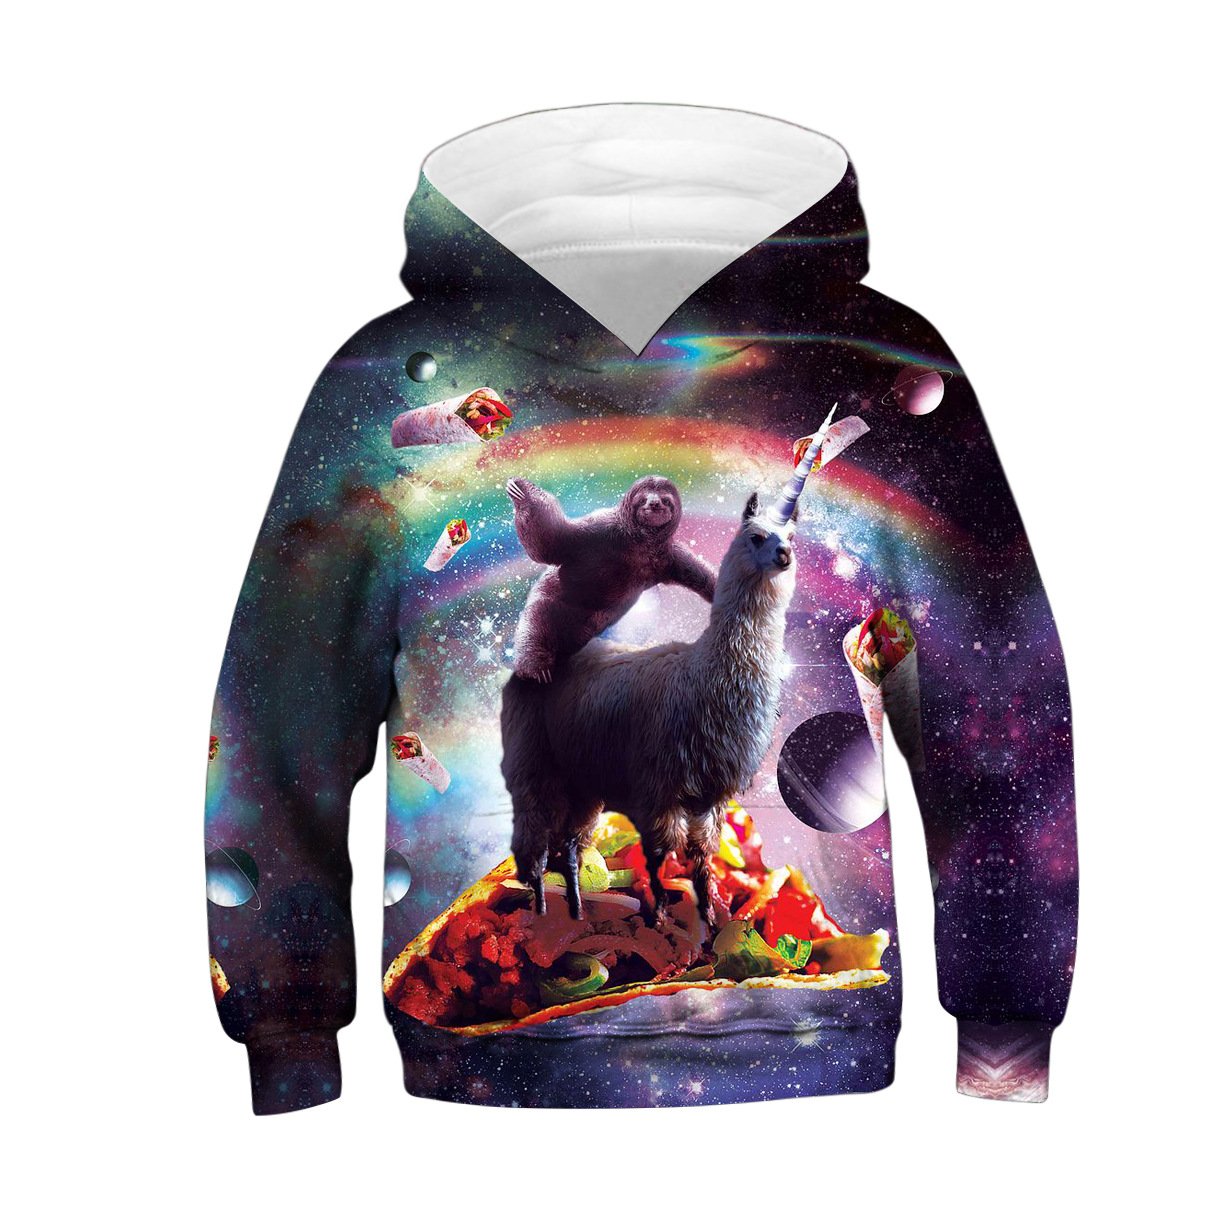 Kids 3d Hoodies Colorful Paint Pizza Alpaca Printed Sweatshirts for Children - mihoodie